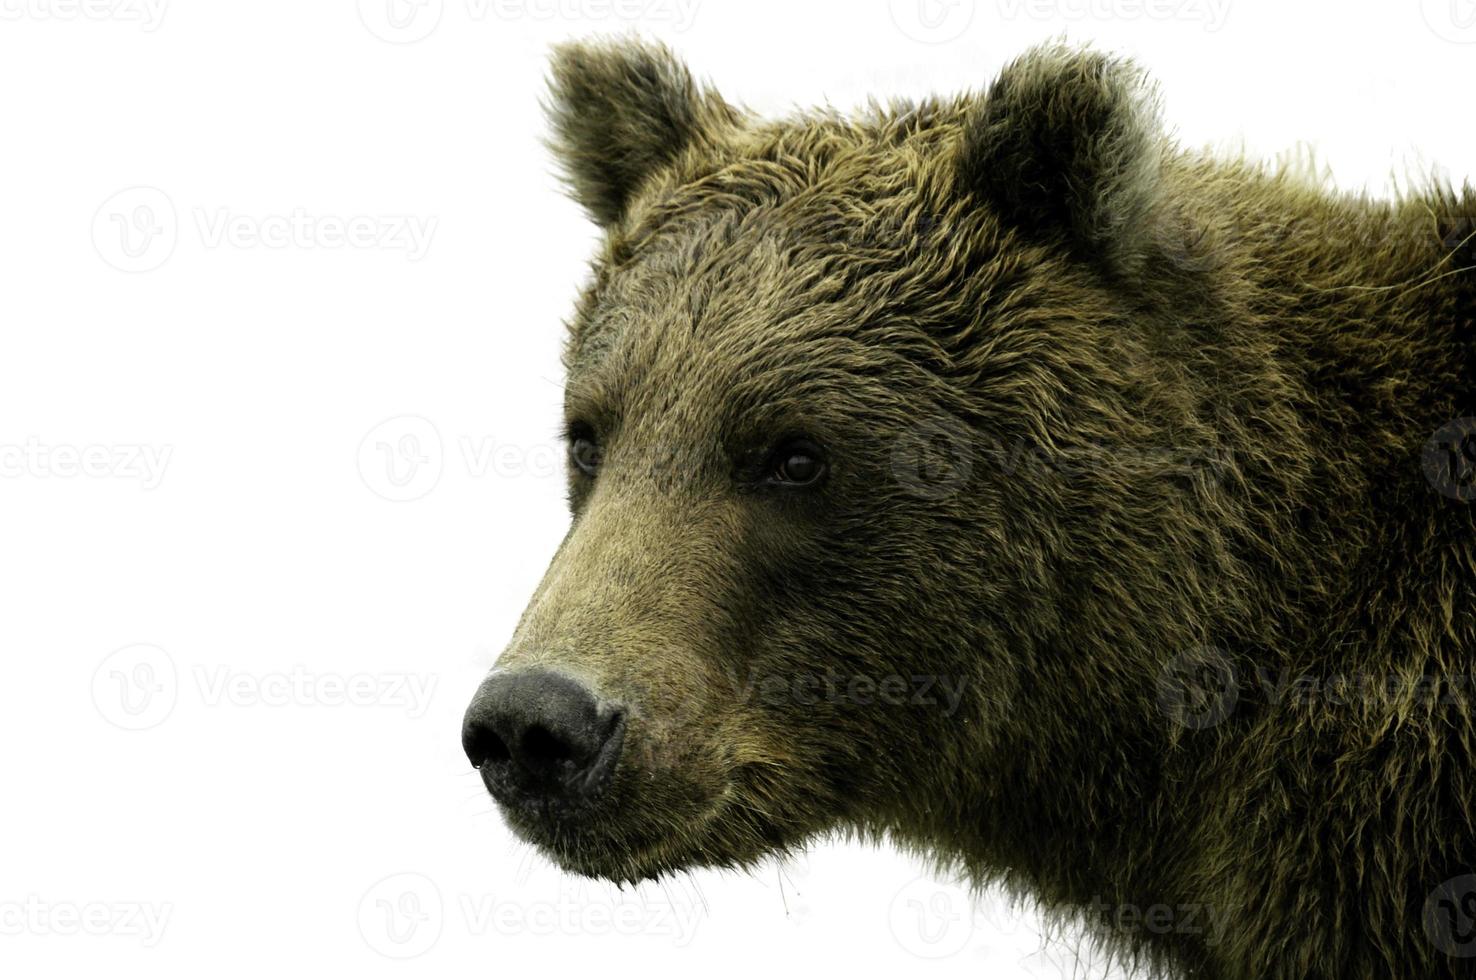 alaskanbjörn på vit bakgrund foto